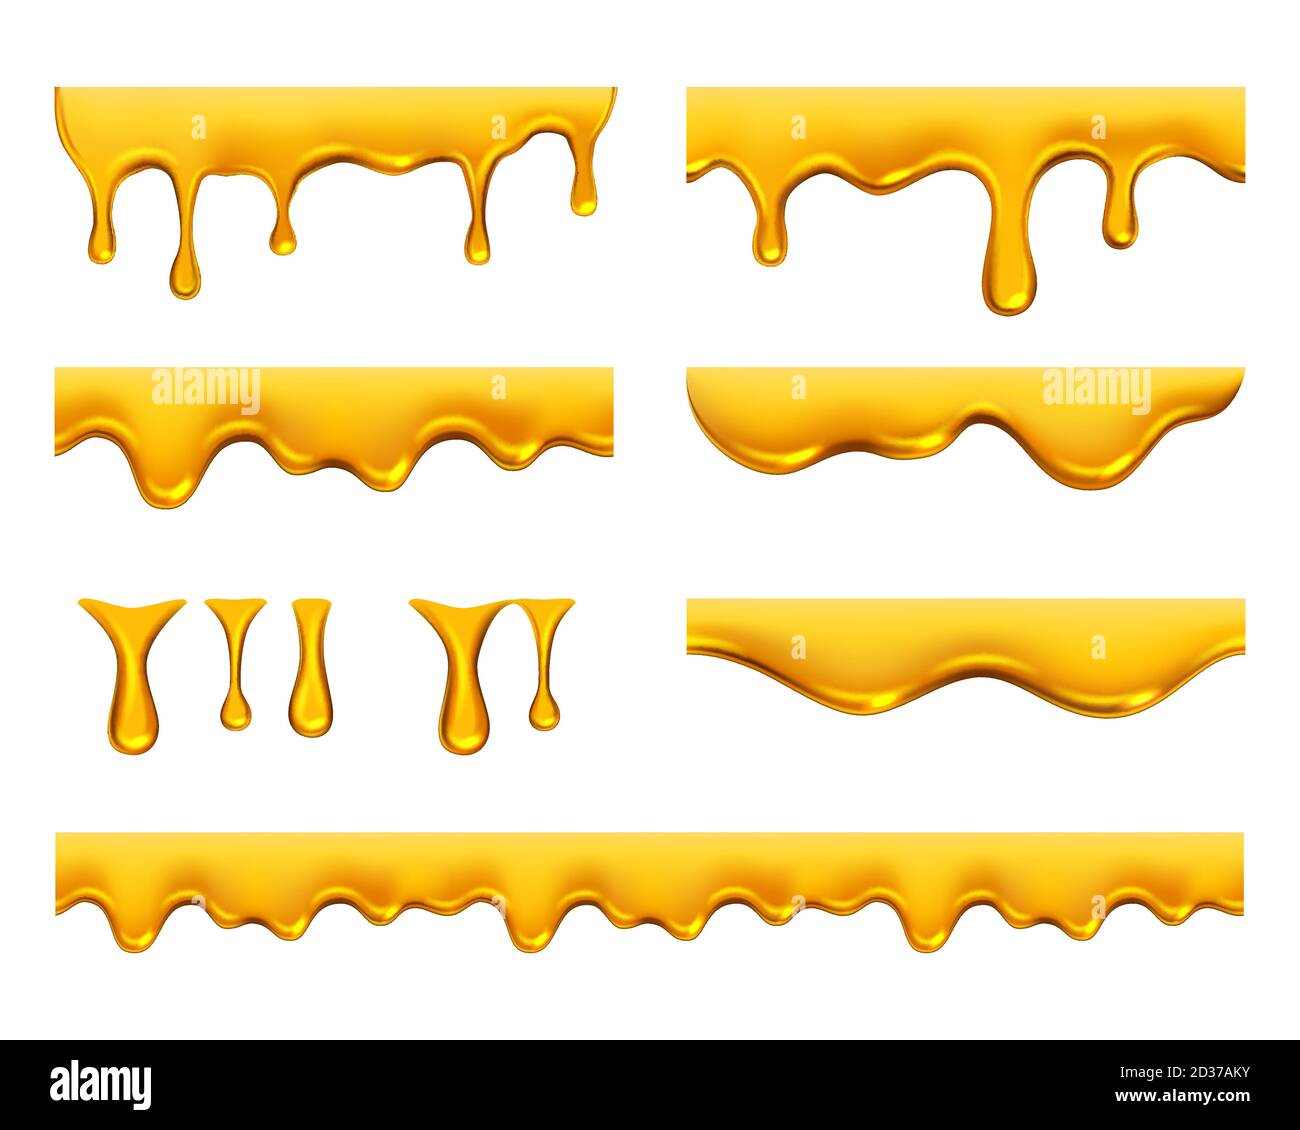 Des gouttes de miel. Jaune d'or sirop ou de jus réalistes les éclaboussures d'huile liquide dégoulinant modèle vectoriel Illustration de Vecteur